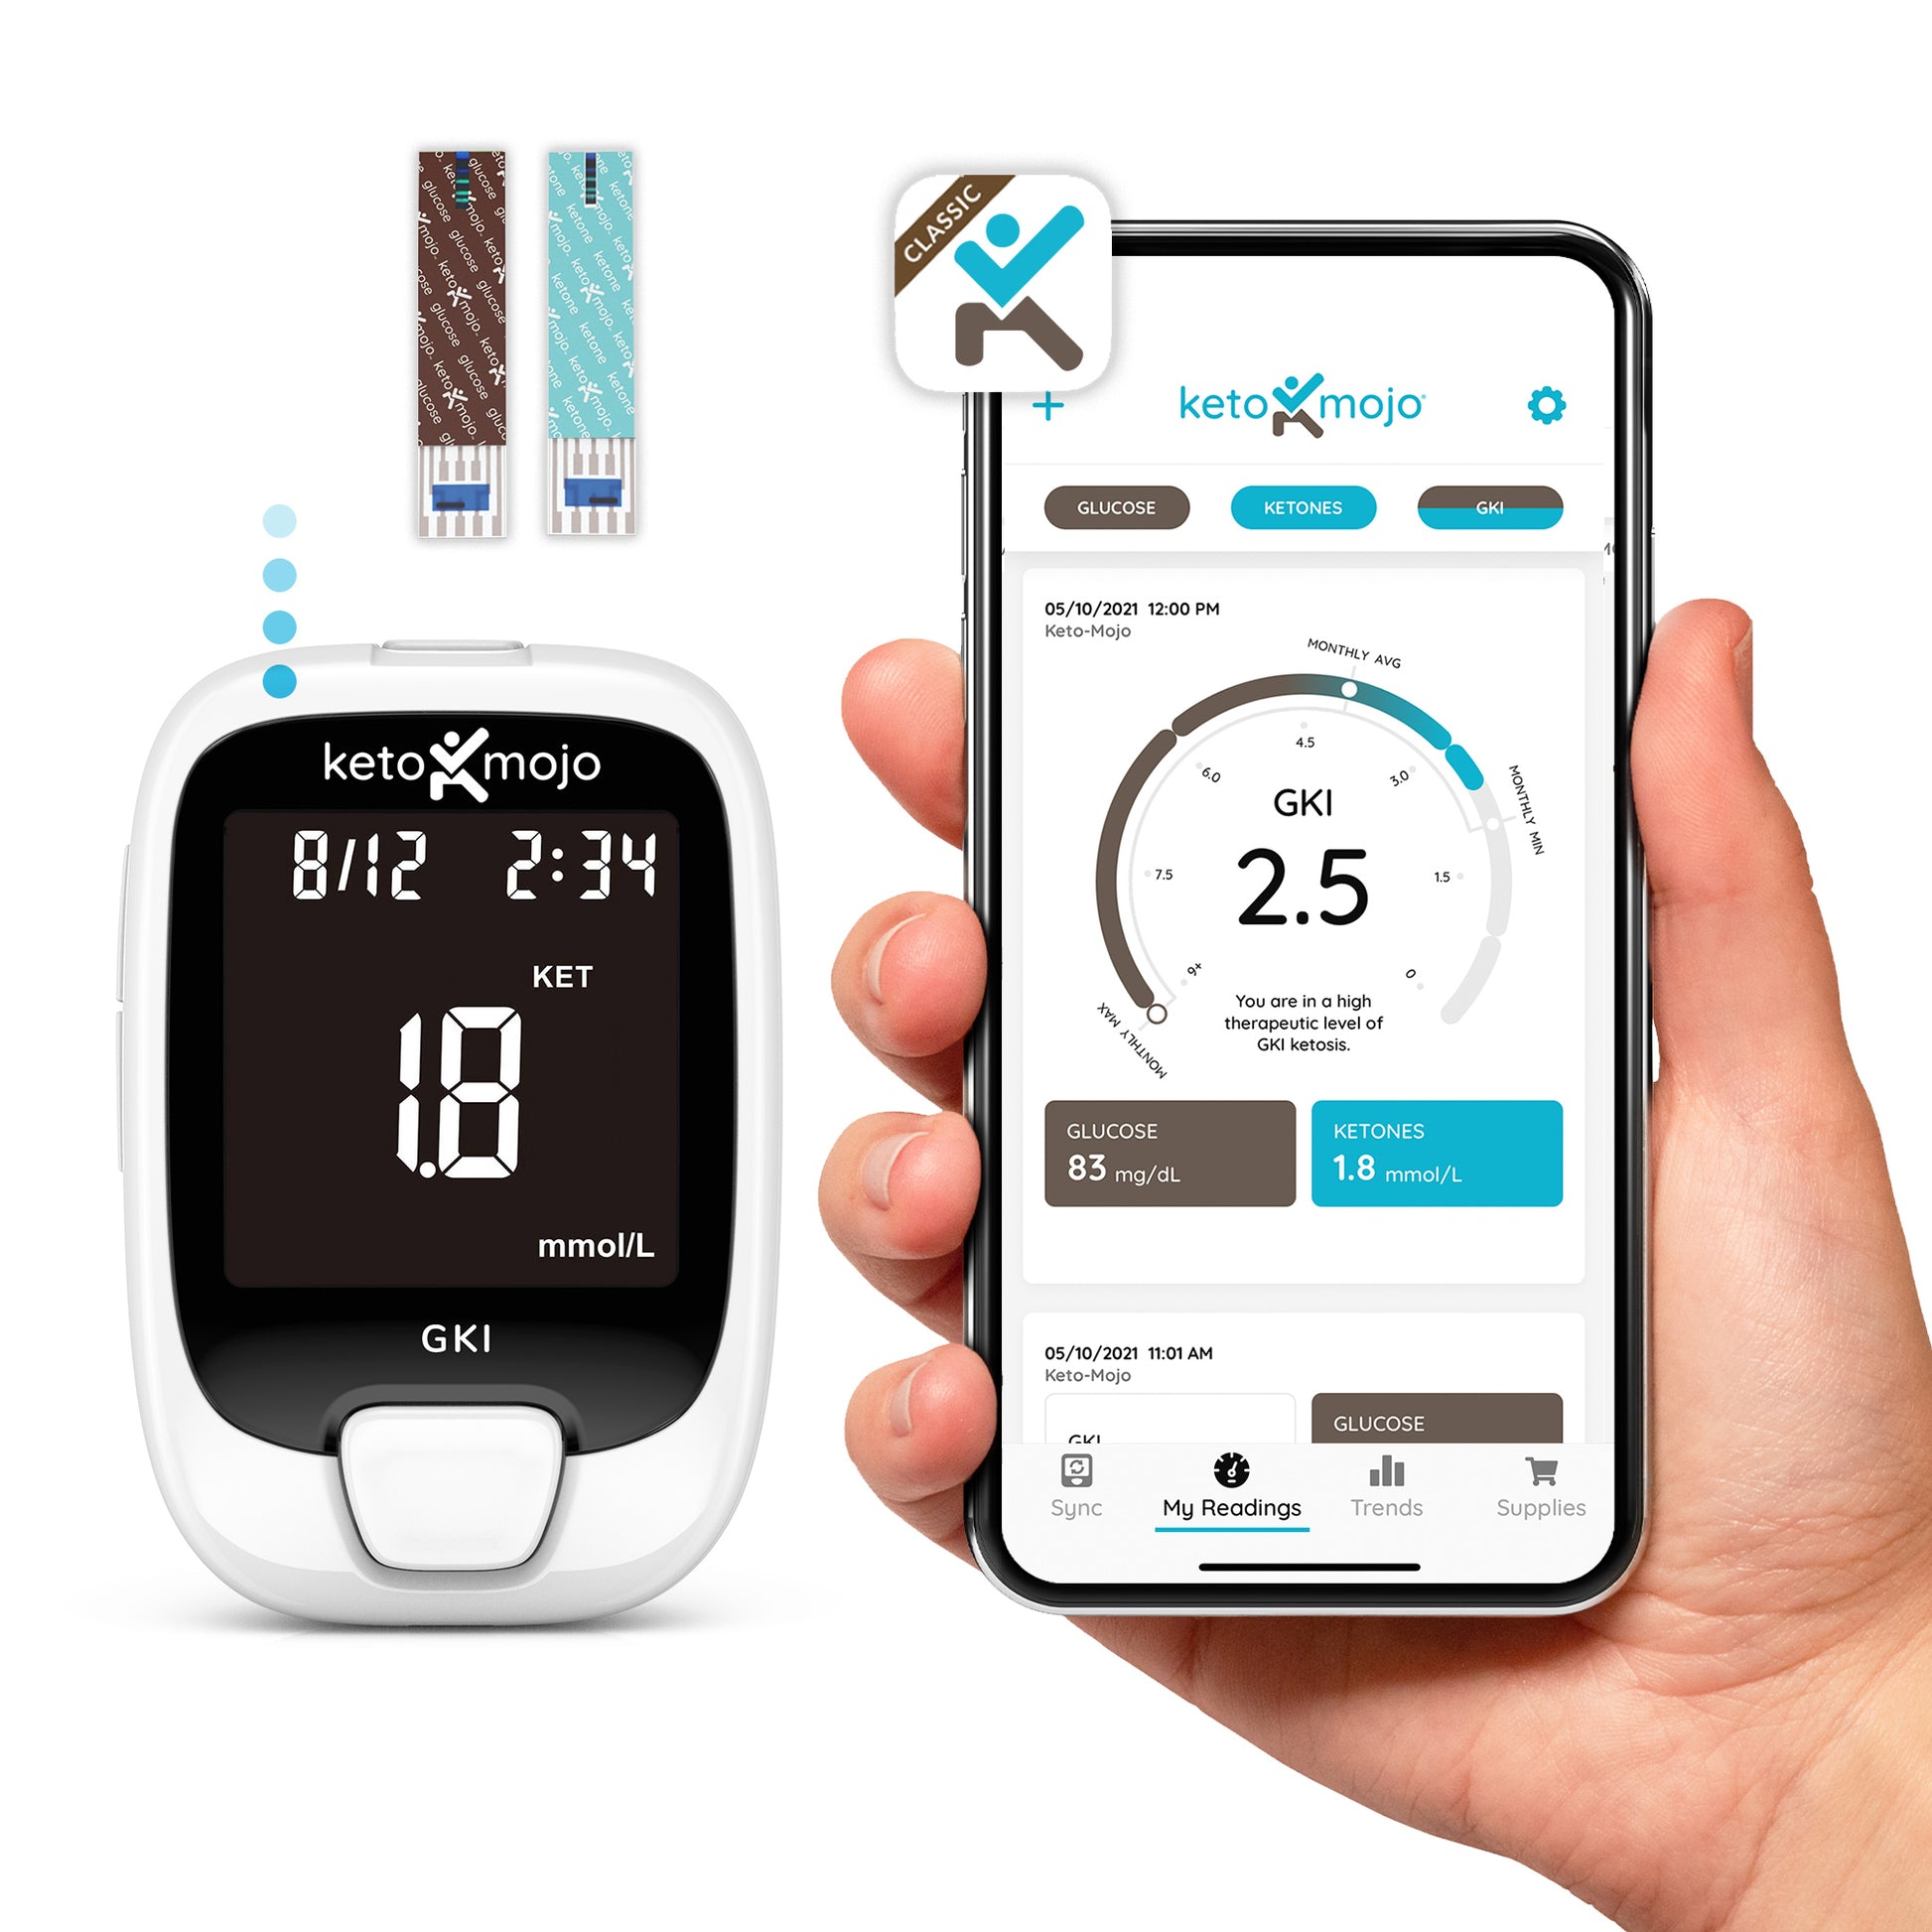 GKI-Bluetooth Blood Glucose & Ketone Meter Kit - PROMO BUNDLE – Keto-Mojo  Europe